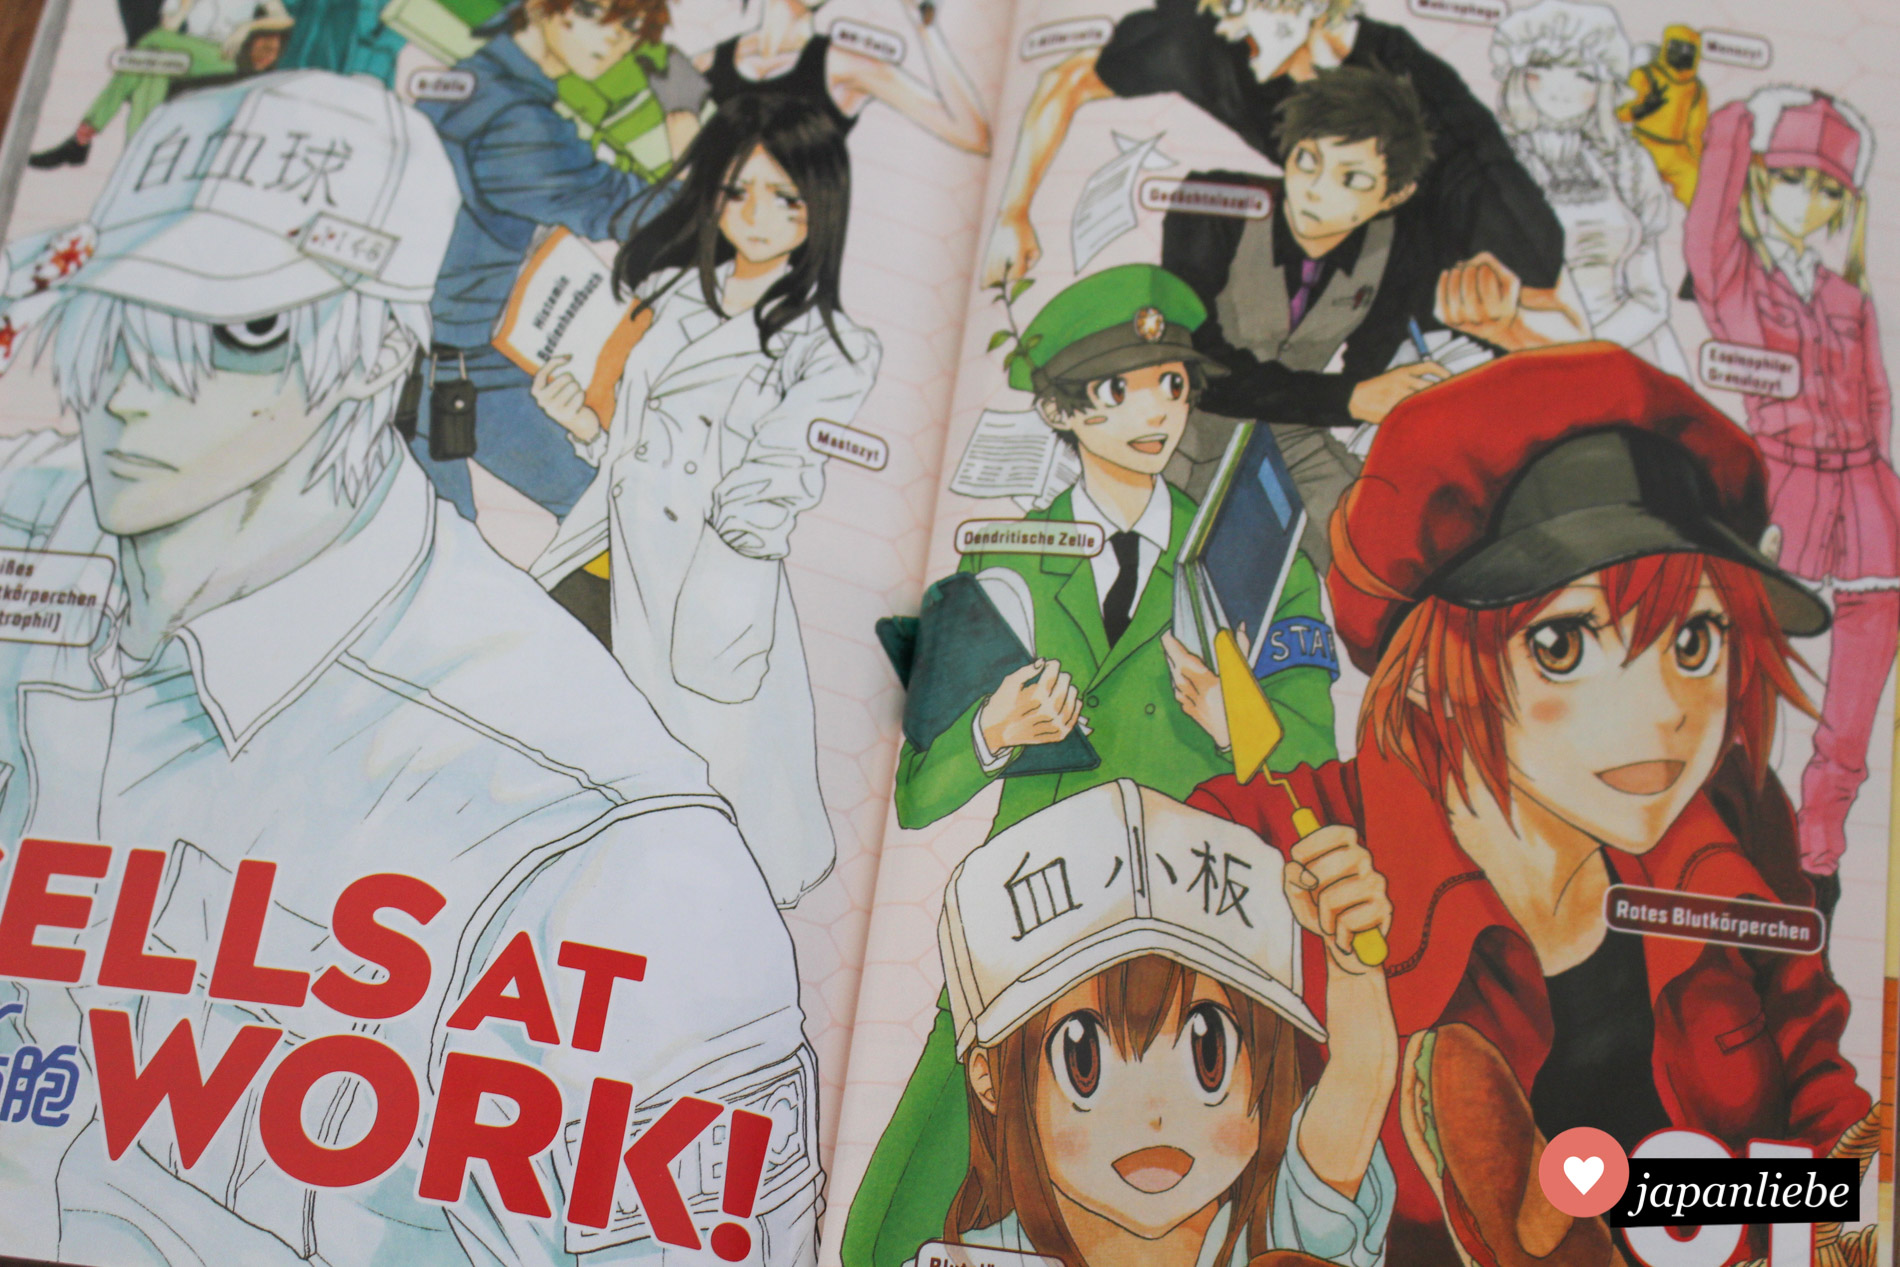 Manga Cult geizt nicht bei der Qualität ihrer Manga und spendiert den Bänden Farbseiten. Bei "Cells at Work!" kommen die unterschiedlichen Zelltypen erst durch die Colorierung so richtig zur Geltung.